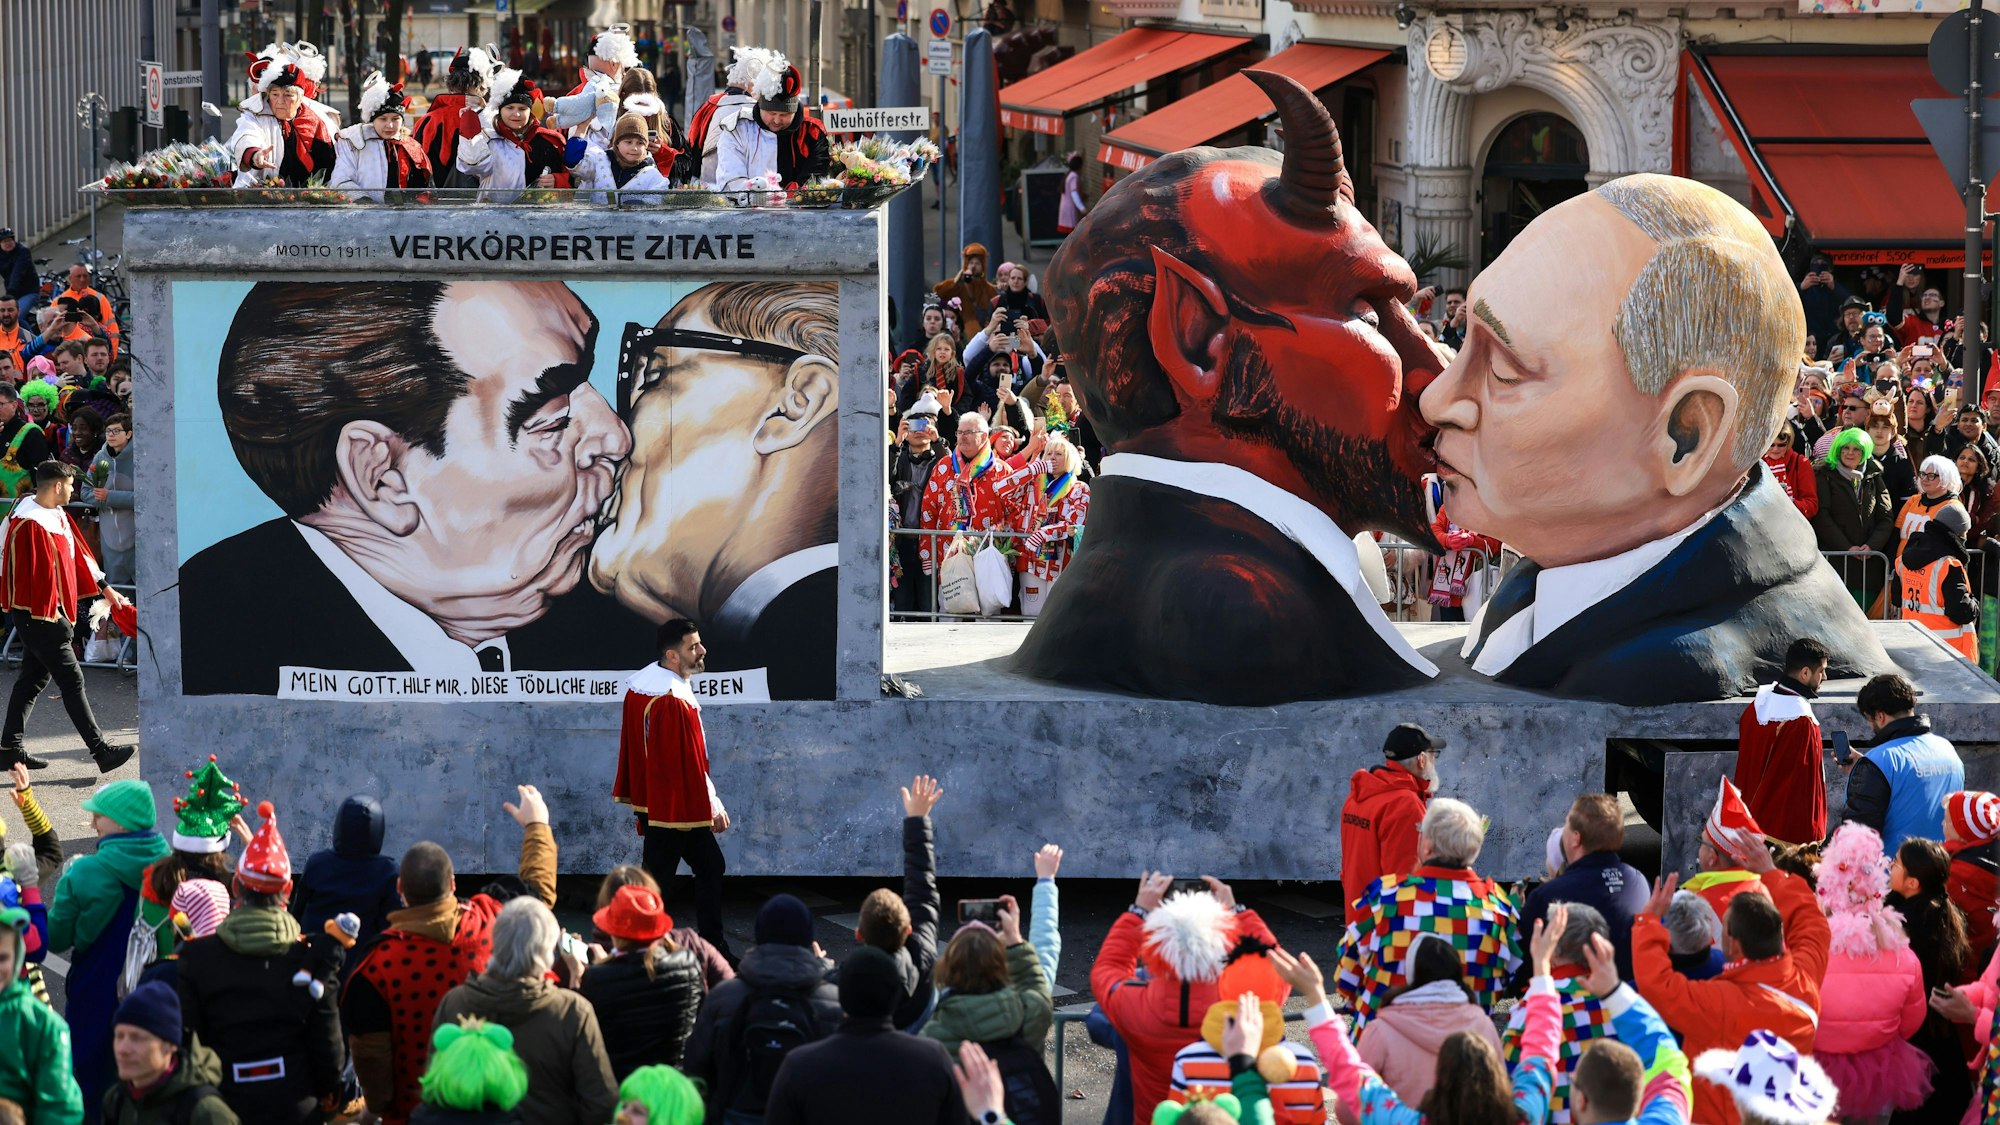 Der Mottowagen ‚Verkörperte Zitate‘, dem Motto der Session von 1911, mit einer Darstellung des russischen Präsidenten Putin der den Teufel küsst.